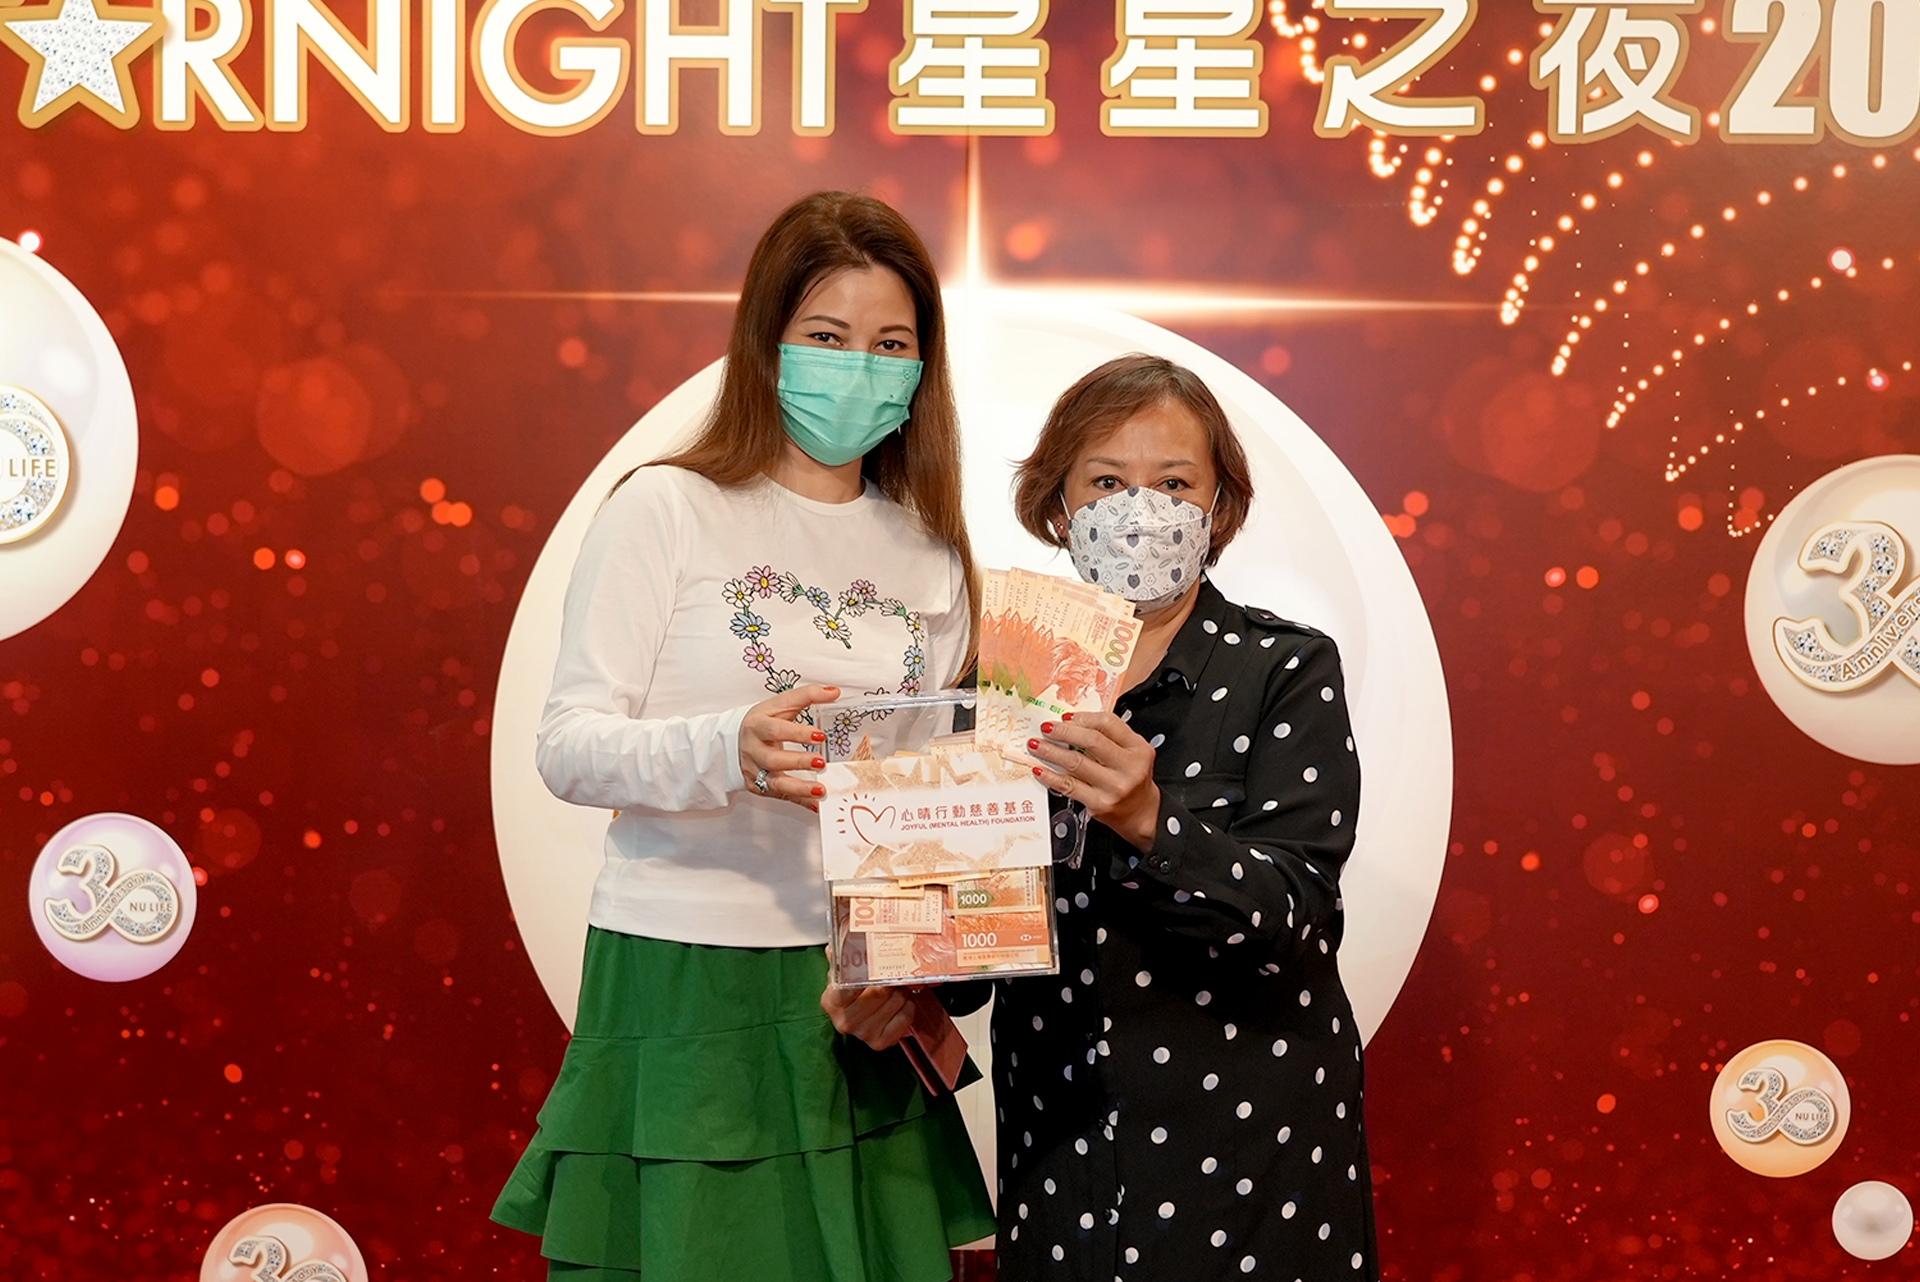 恭賀Anna Ko從星級百萬富翁遊戲贏取HK$10,000獎金並與公司合共捐助HK$4000予「心晴行動慈善基金」